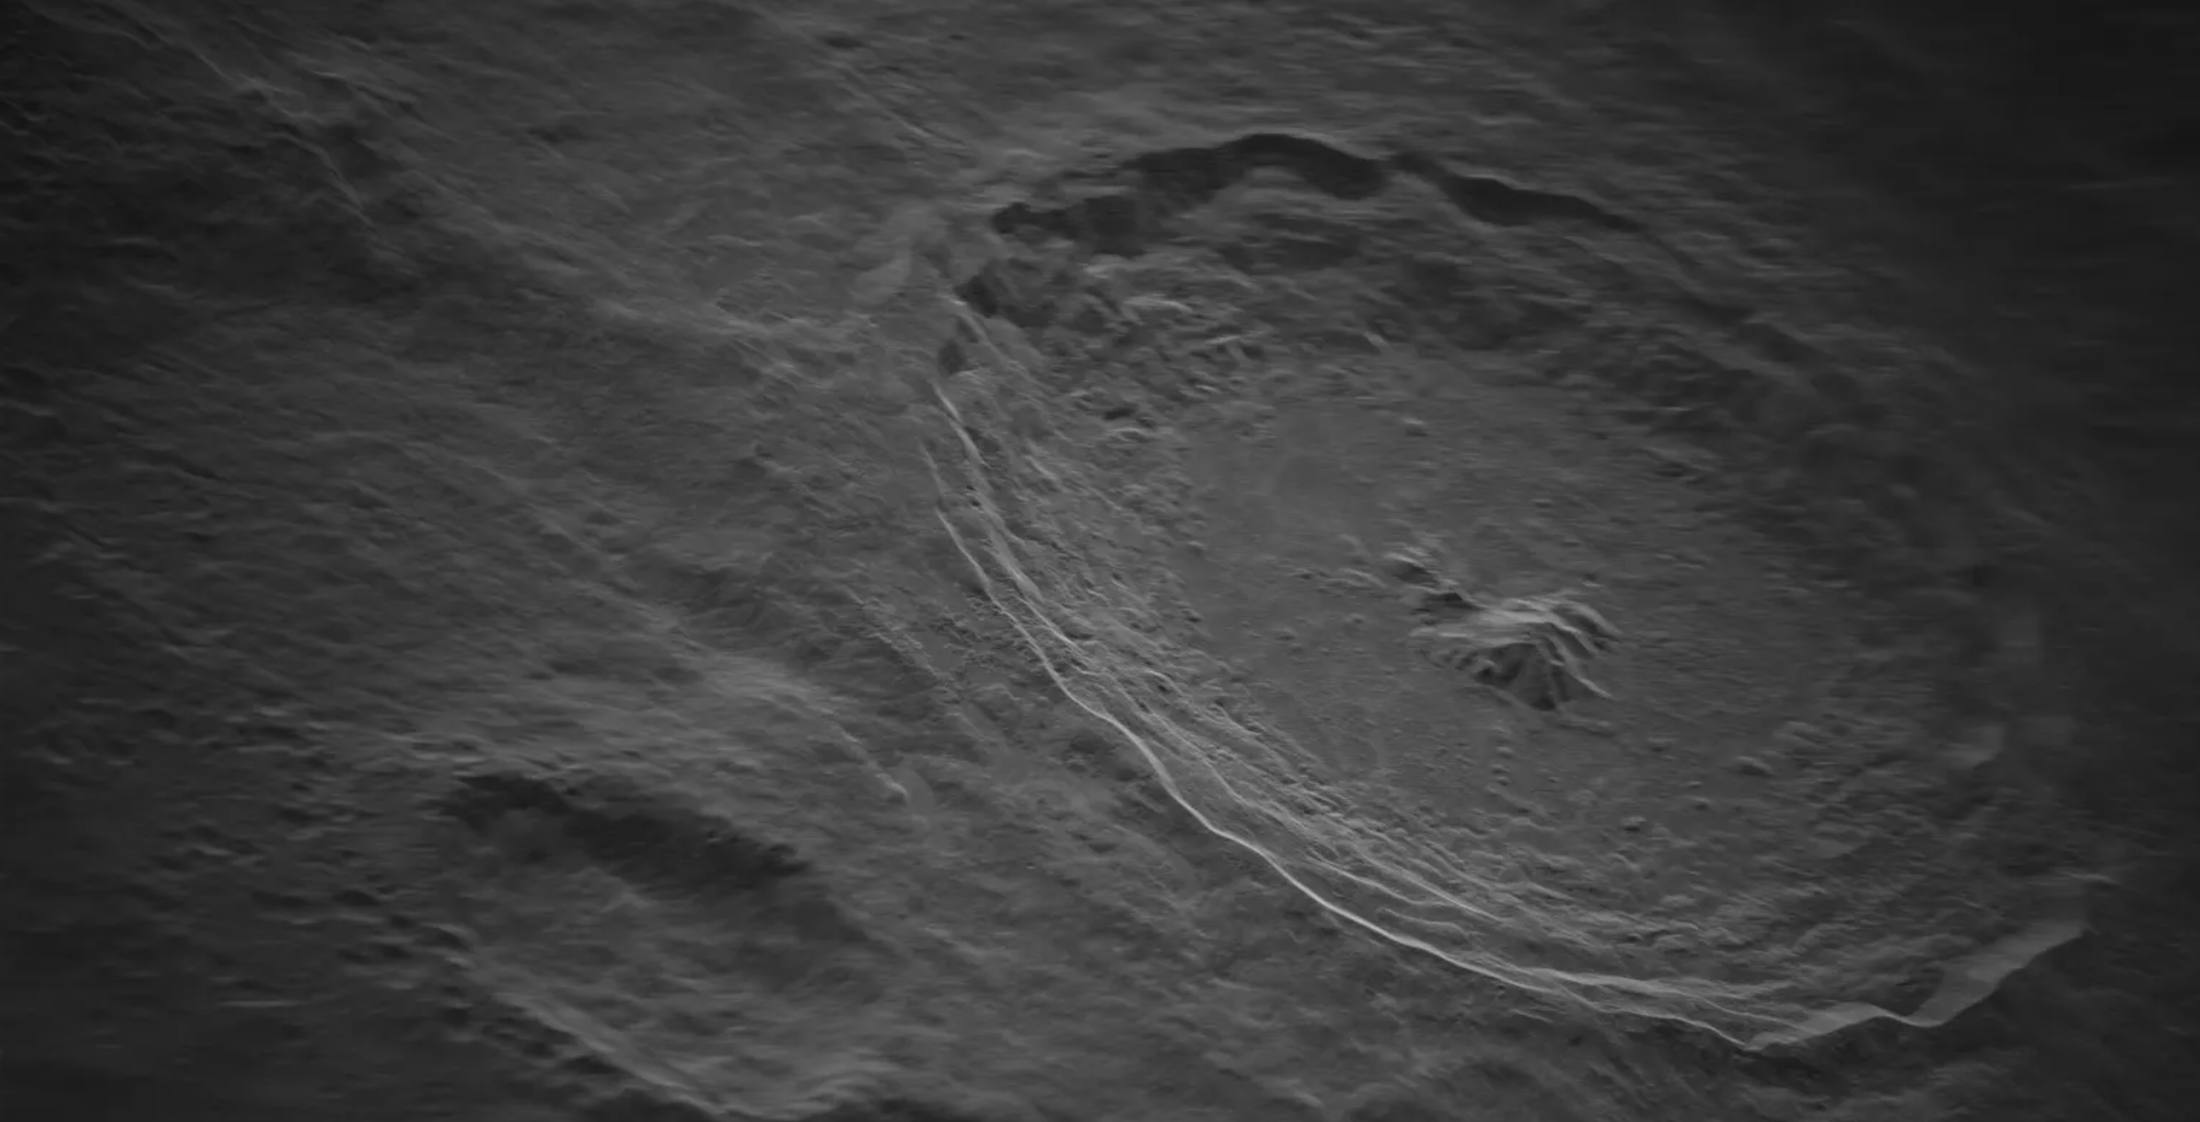 Slika mjeseca snimljena pomoću radara, Zasluge: Raytheon.